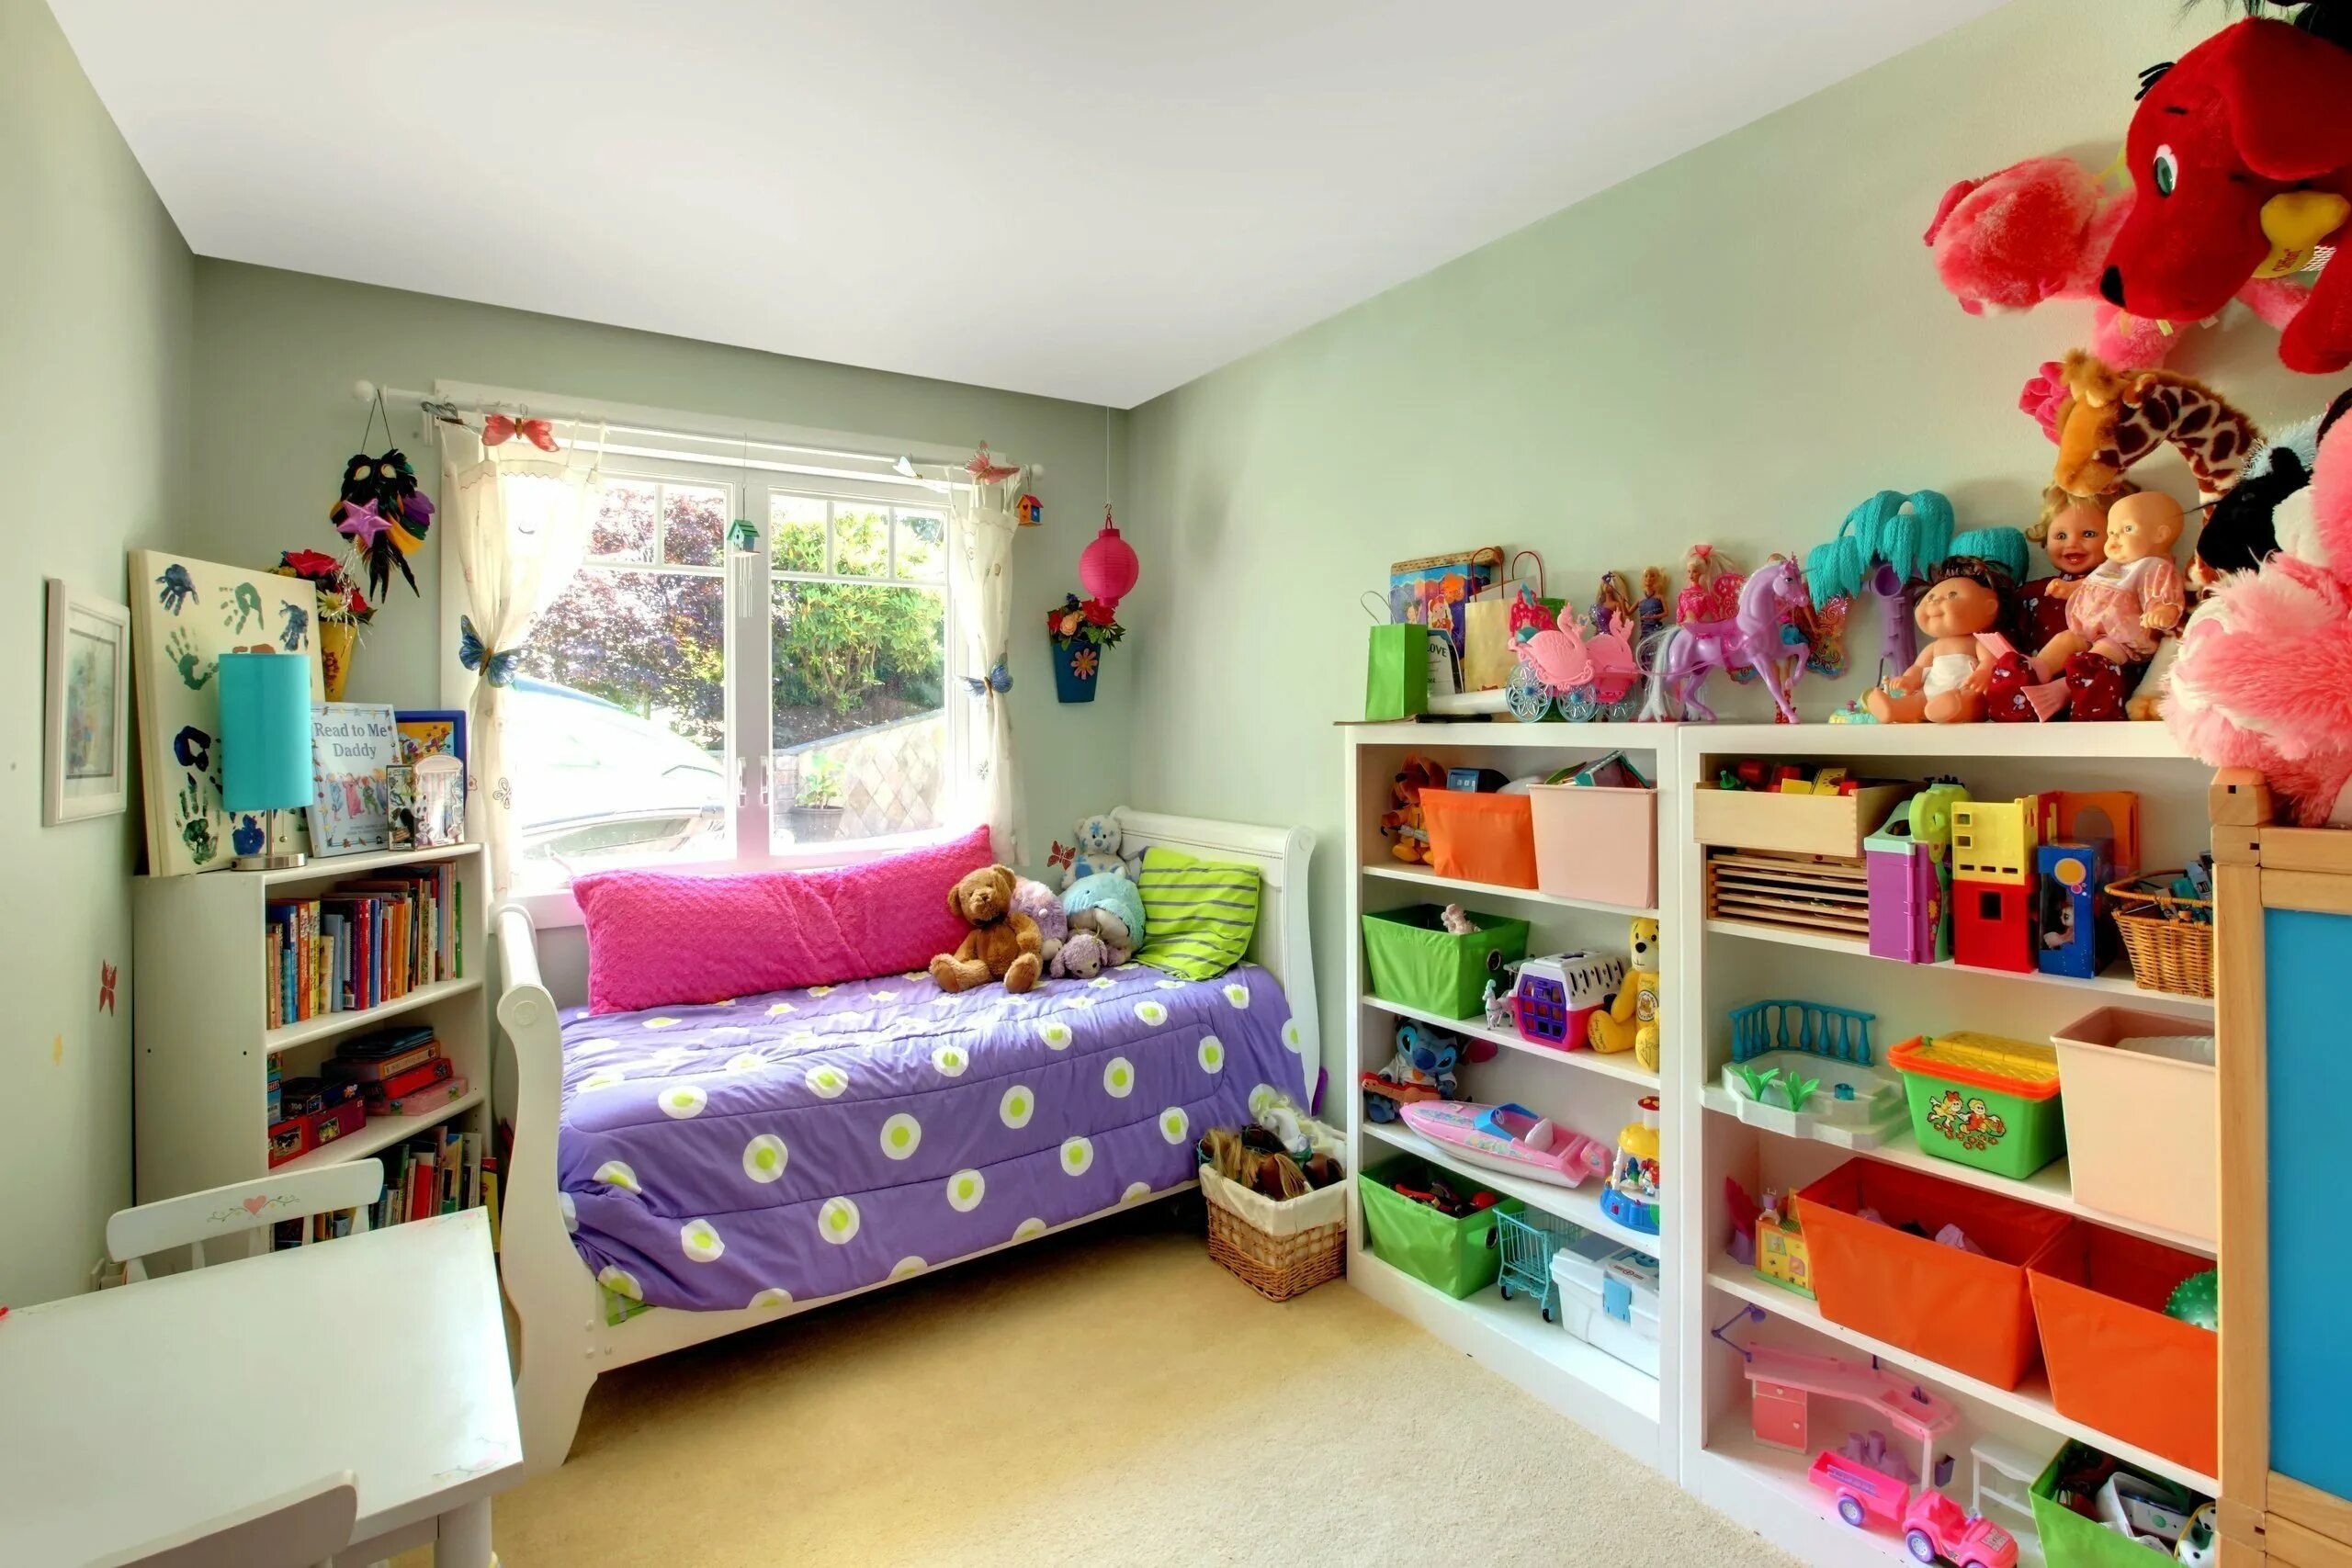 Комнате ребенка должно быть. Детская комната. Порядок в детской комнате. Комната с игрушками. Игрушки в детской комнате.